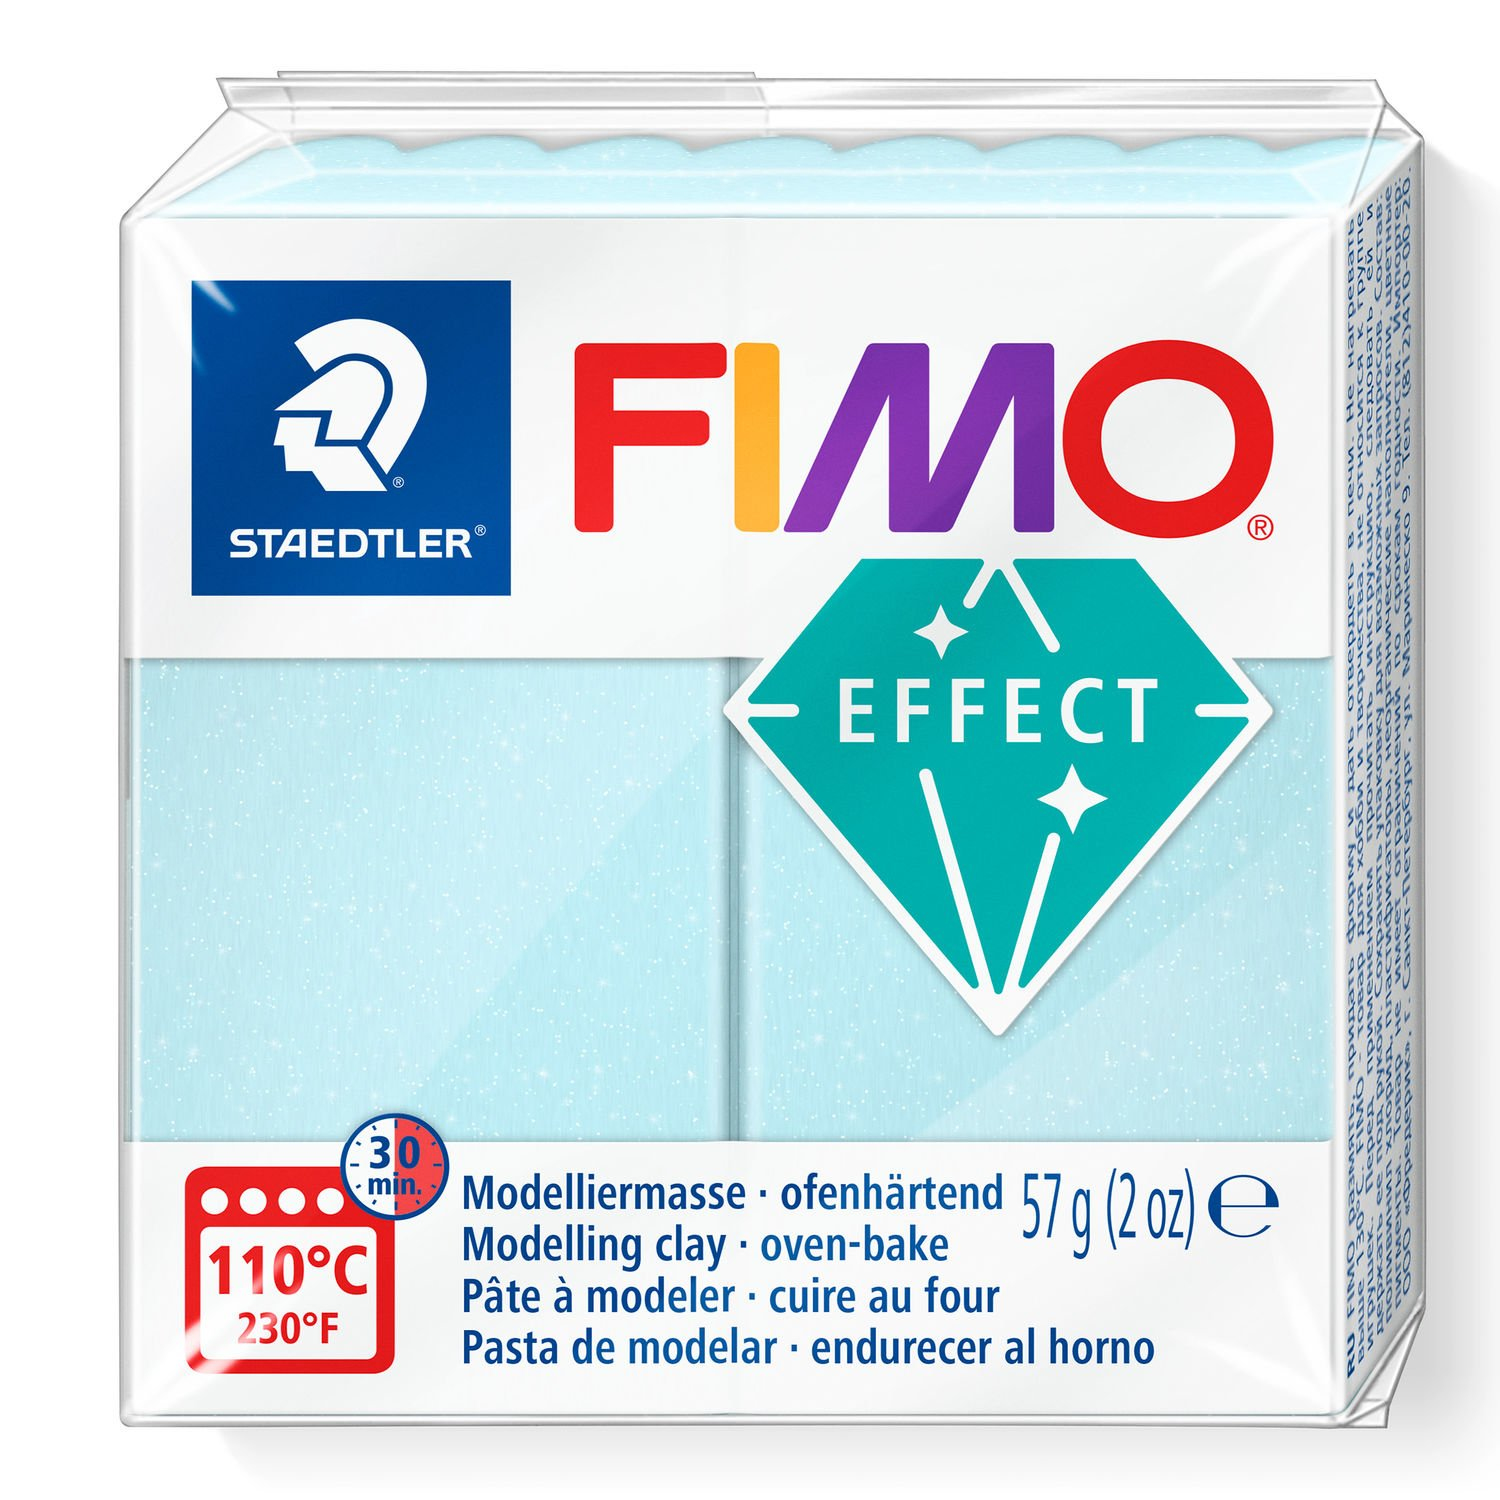 STAEDTLER FIMO 8020 - Knetmasse - Blau - Erwachsene - 1 Stück(e) - Blue ice quartz - 1 Farben